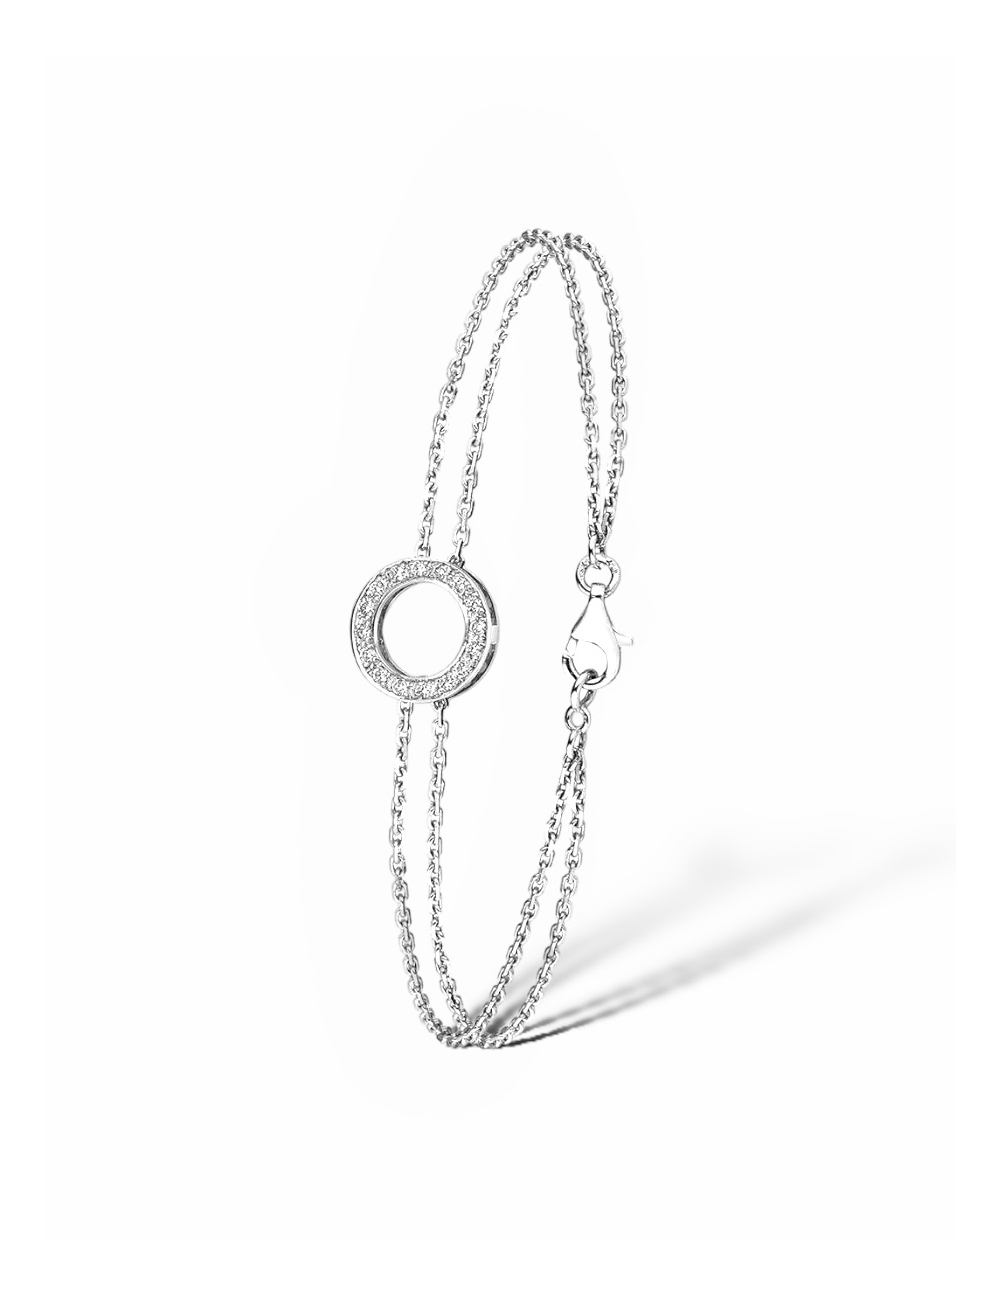 Luxury white diamonds and white gold circle bracelet for women